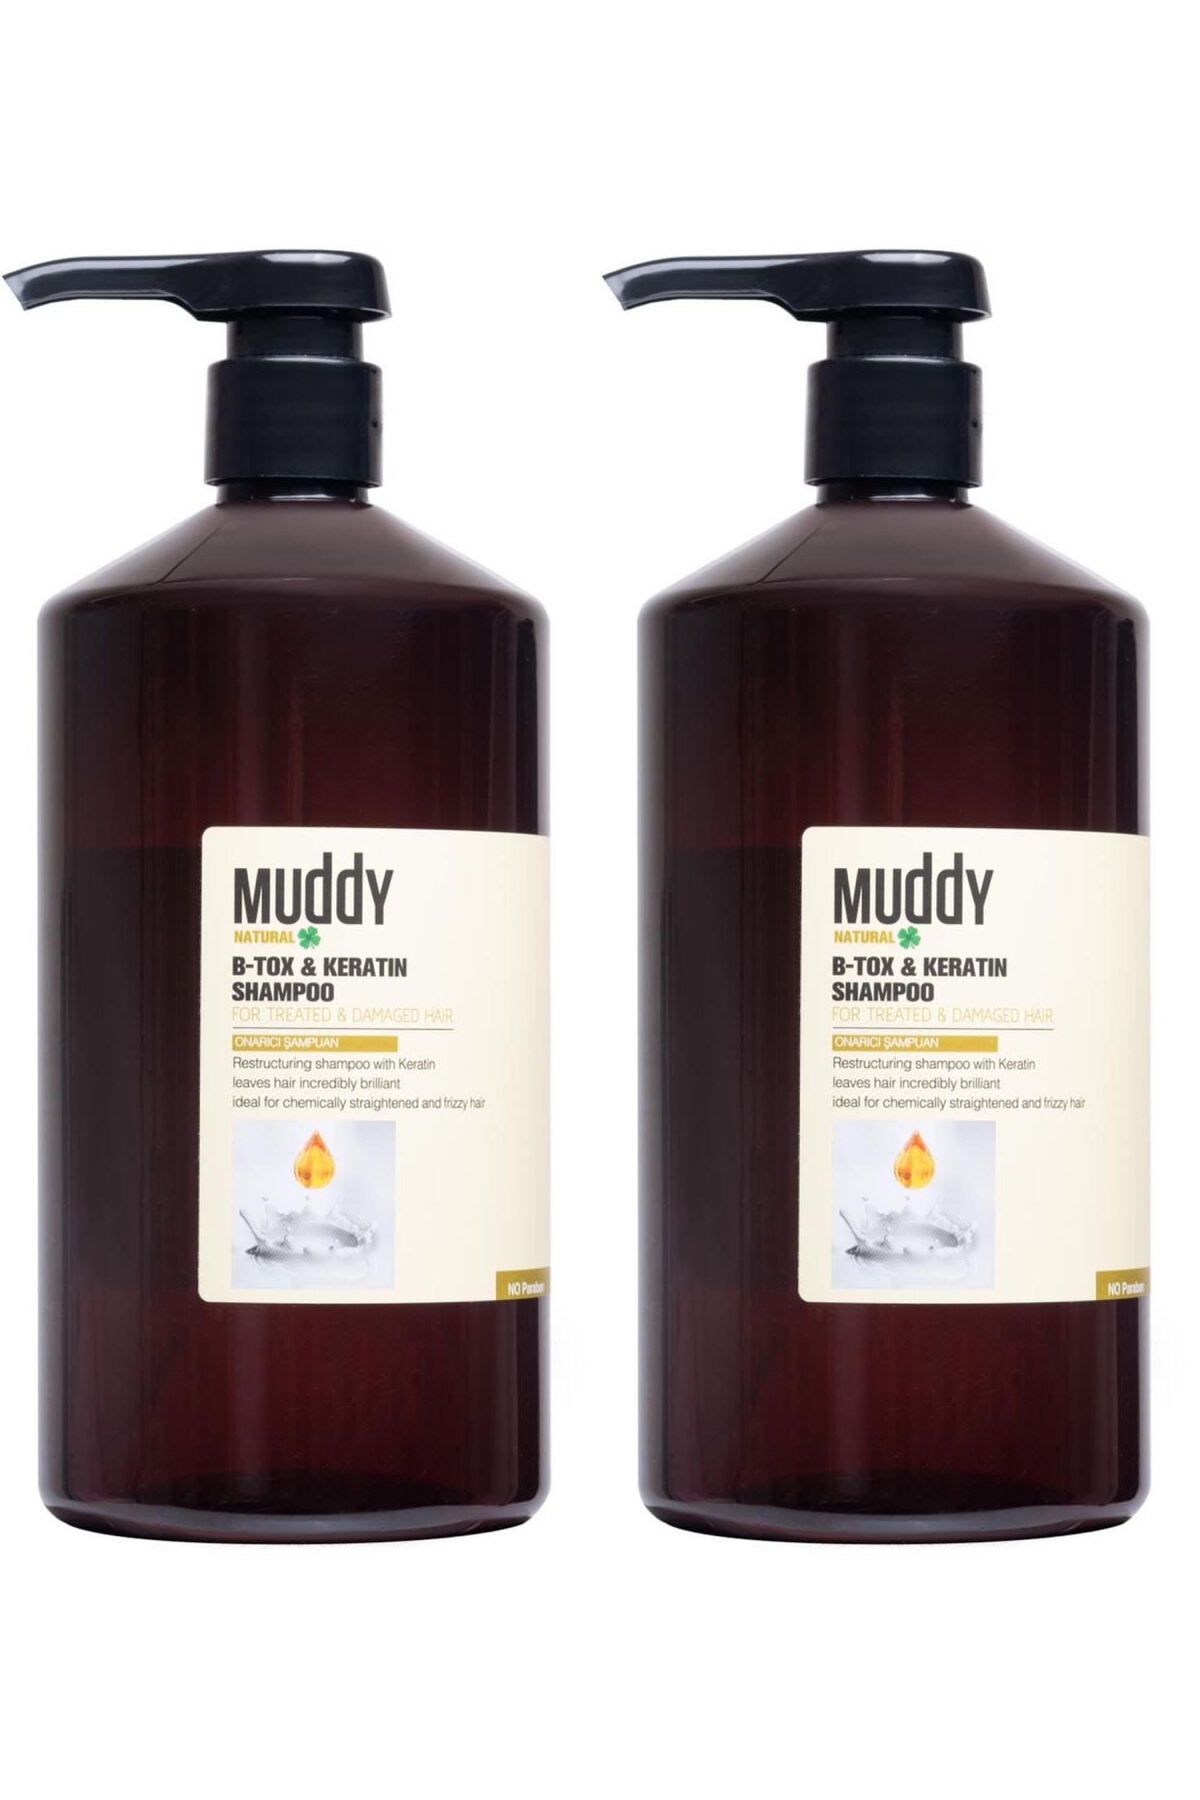 Muddy Onarıcı Ve Besleyici B-tox&keratın Shampoo 1000 Ml 2 Adet